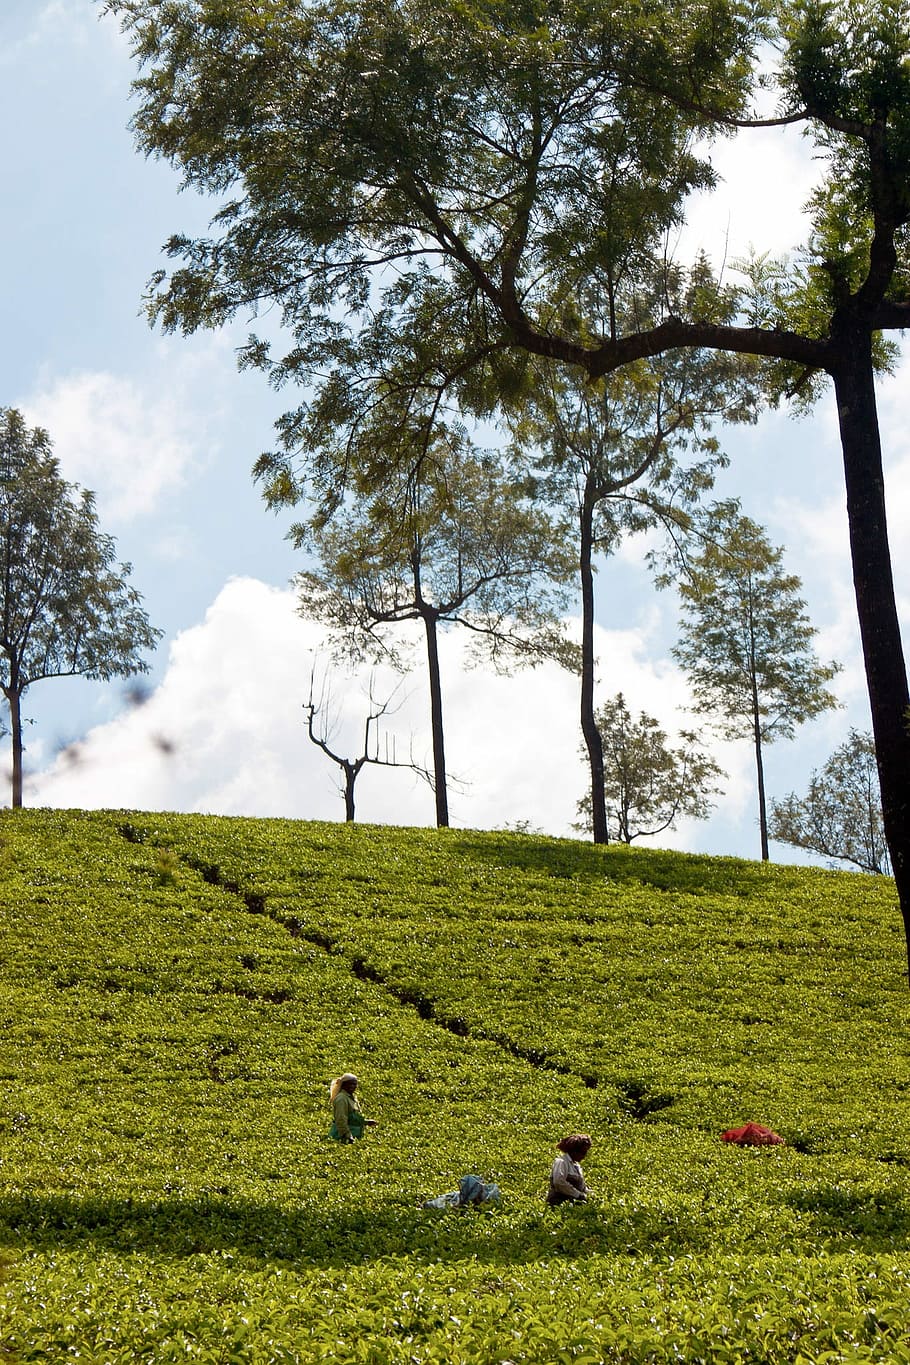 Tee, plantación de té, India, plantación, terrazas de cultivo, cosecha de té, montañas, nubes, naturaleza, paisaje